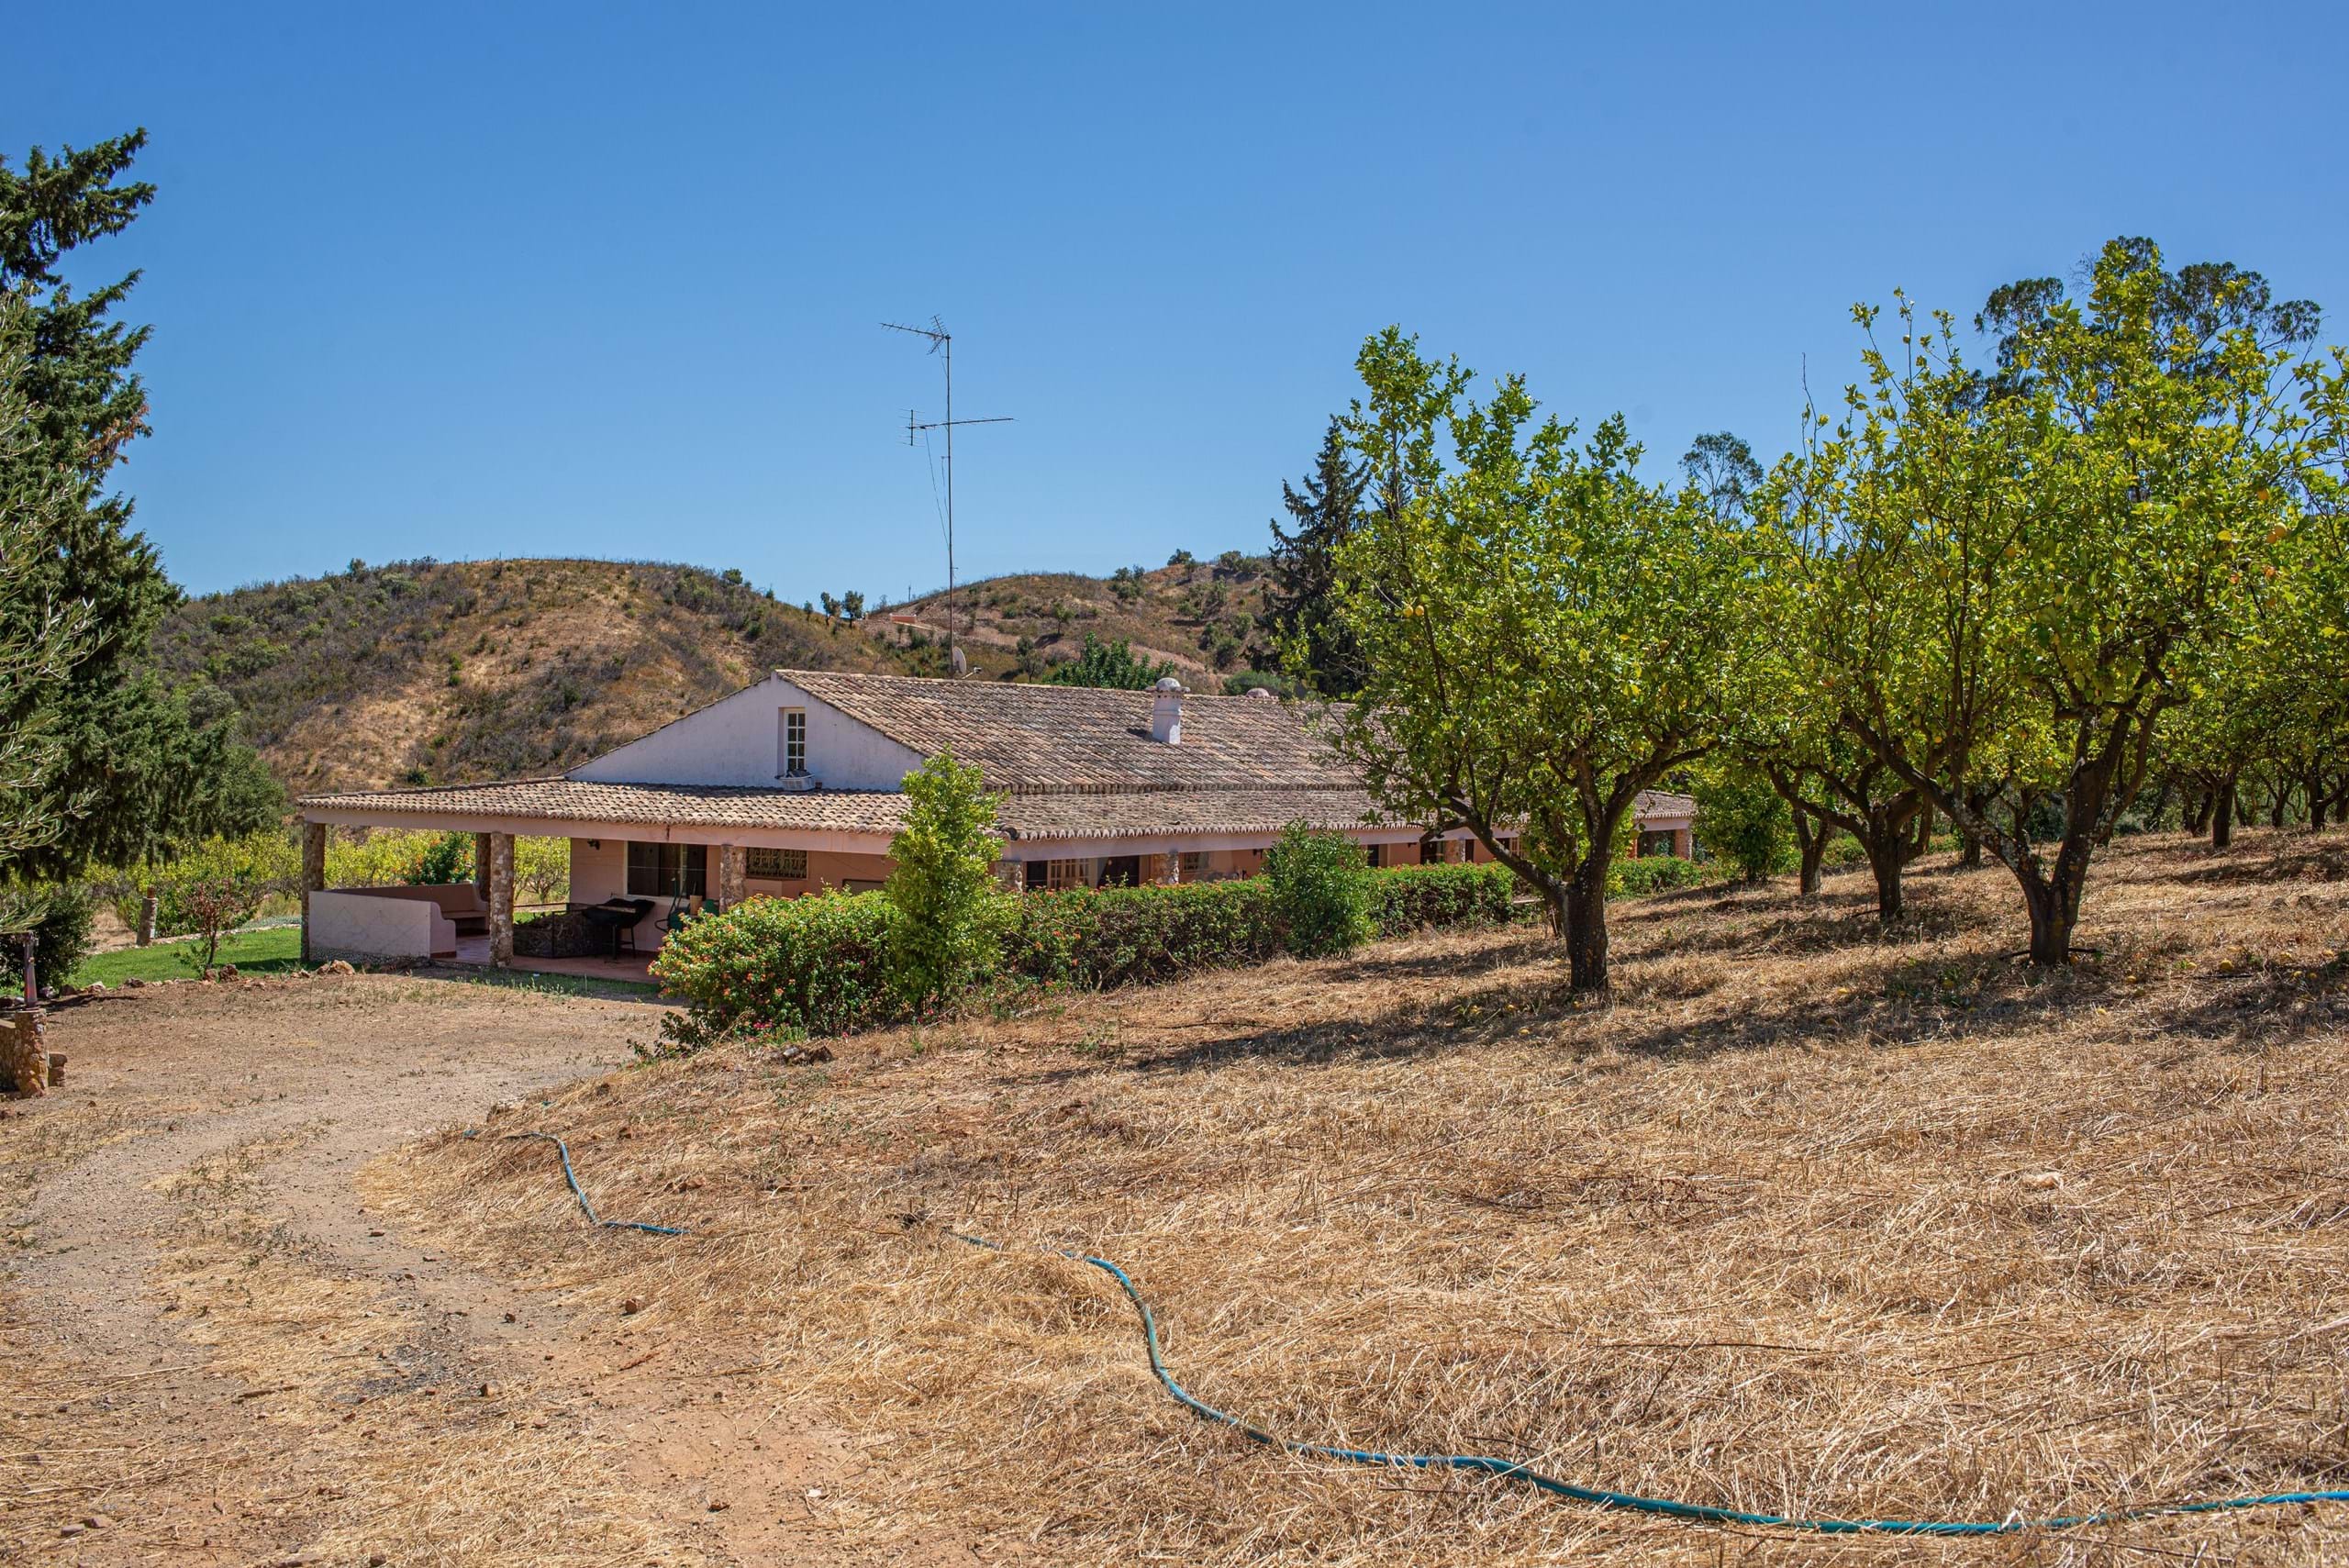 Bauernhof zu verkaufen mit 17 Hektar Land, in einer privilegierten Lage, in der Nähe des Staudamms von Silves (Algarve)